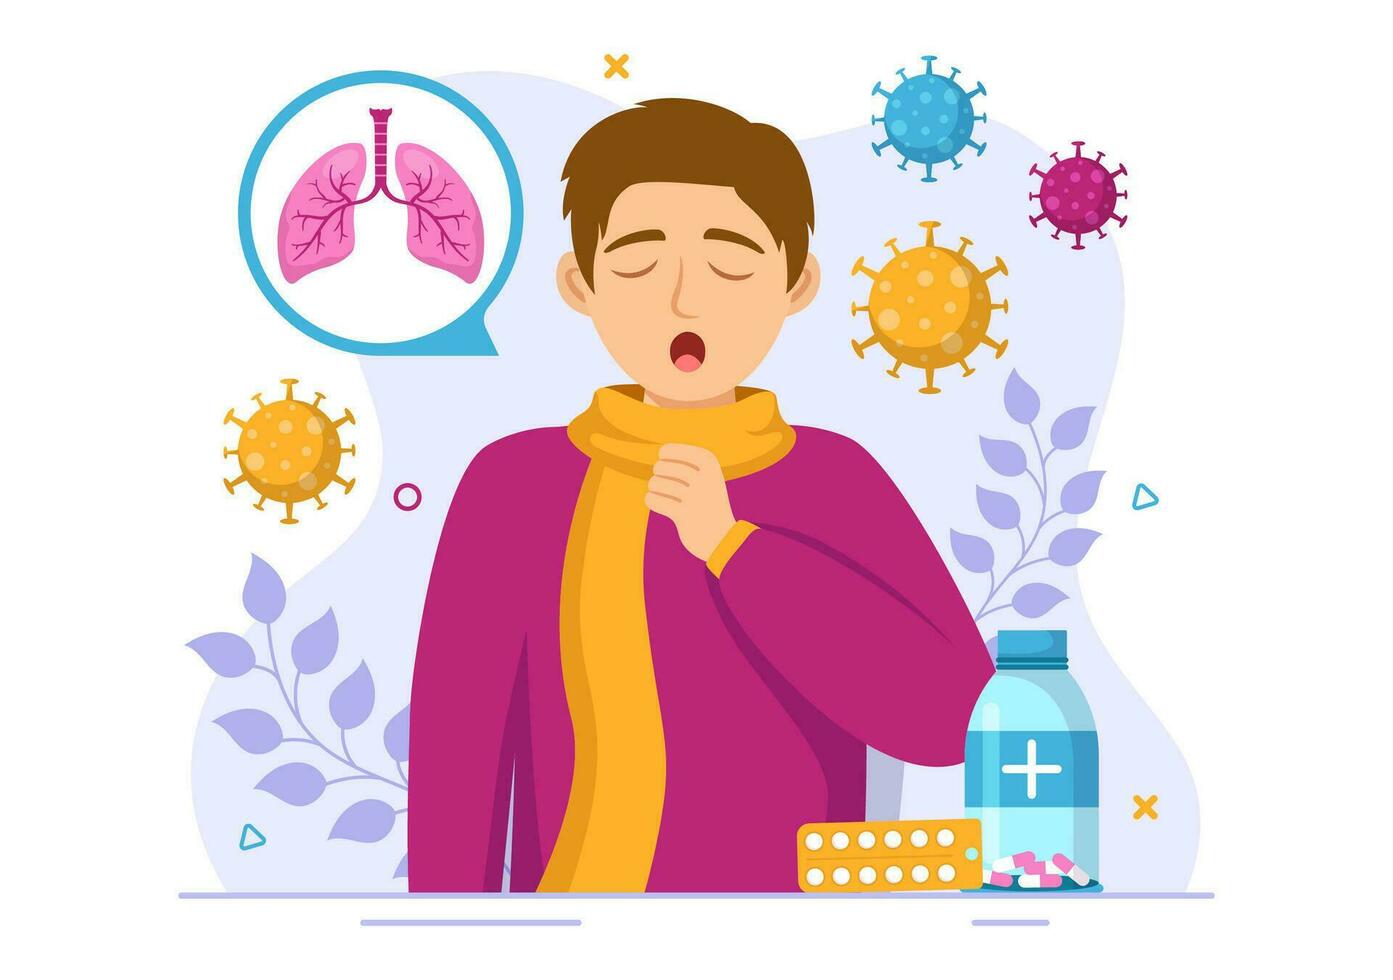 respiratorio infezione vettore illustrazione di infiammazione nel il polmoni con virus cellule nel assistenza sanitaria sfondo piatto cartone animato mano disegnato modelli